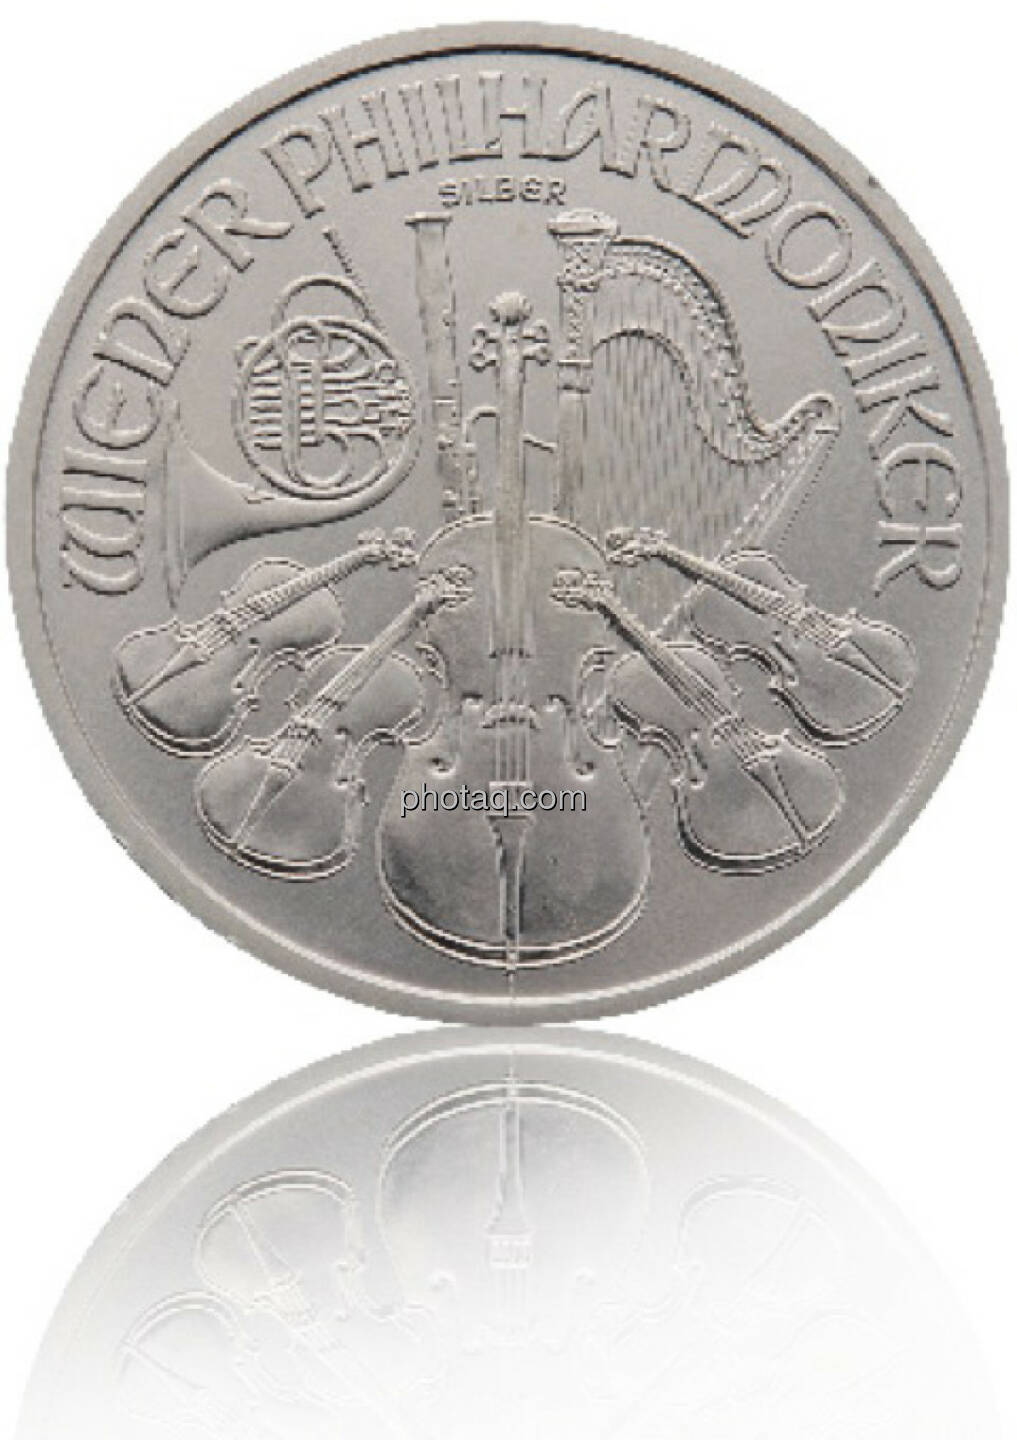 Philharmoniker Silber 1/1 Hersteller: Münze Österreich Herkunftsland: Österreich Durchmesser: 37,00 mm Dicke: 3,20 mm Bruttogewicht: 31,103 Feinheit: 999,9 Erstprägung: 2008